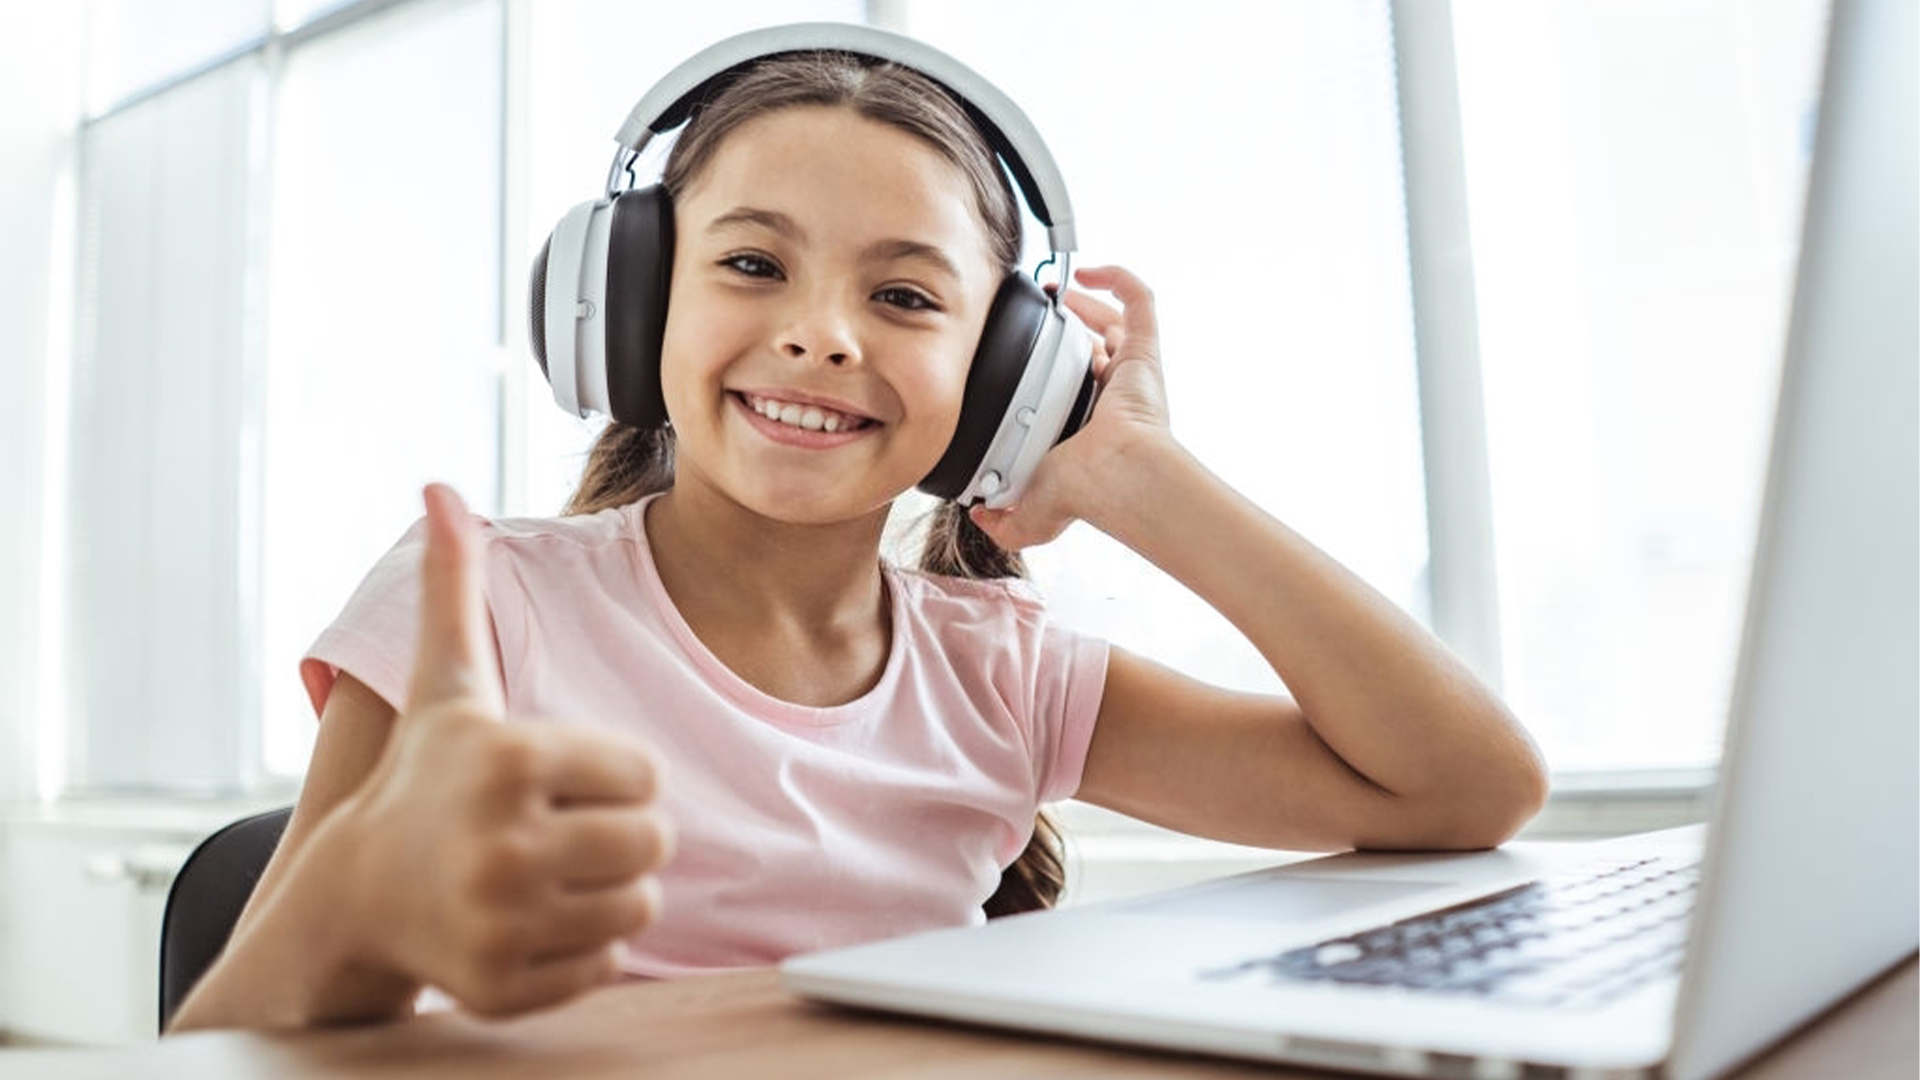 Tips to buy kids headphones